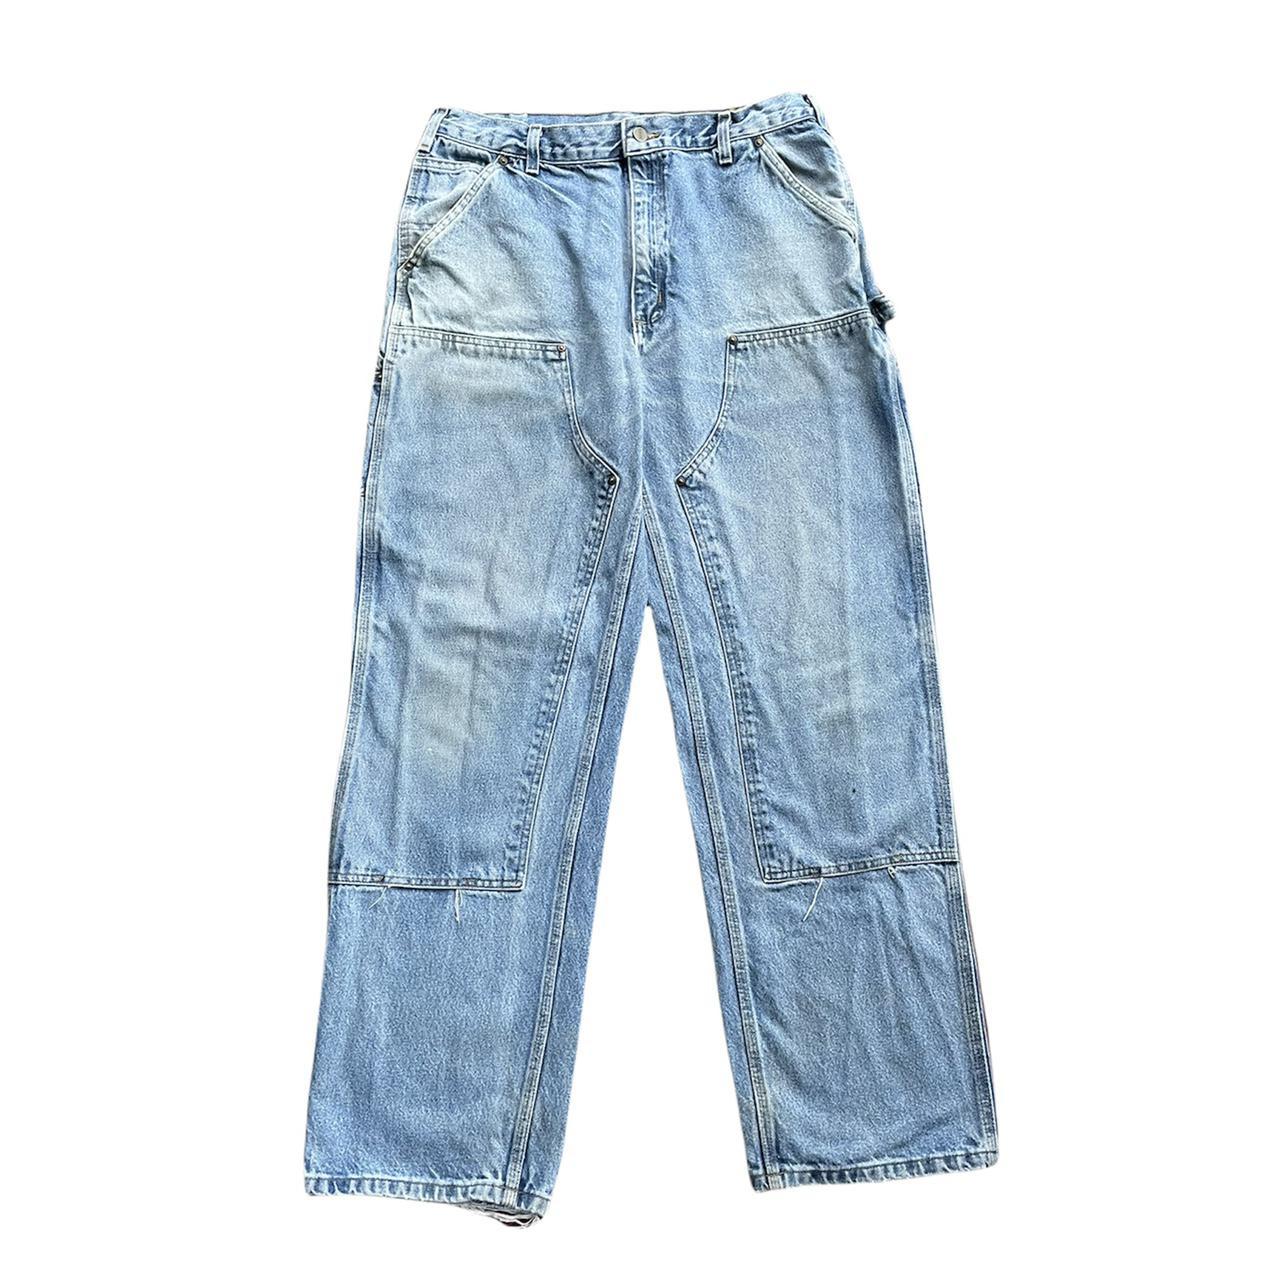 Carhartt Double Knee Jeans. Light faded blue jeans... - Depop